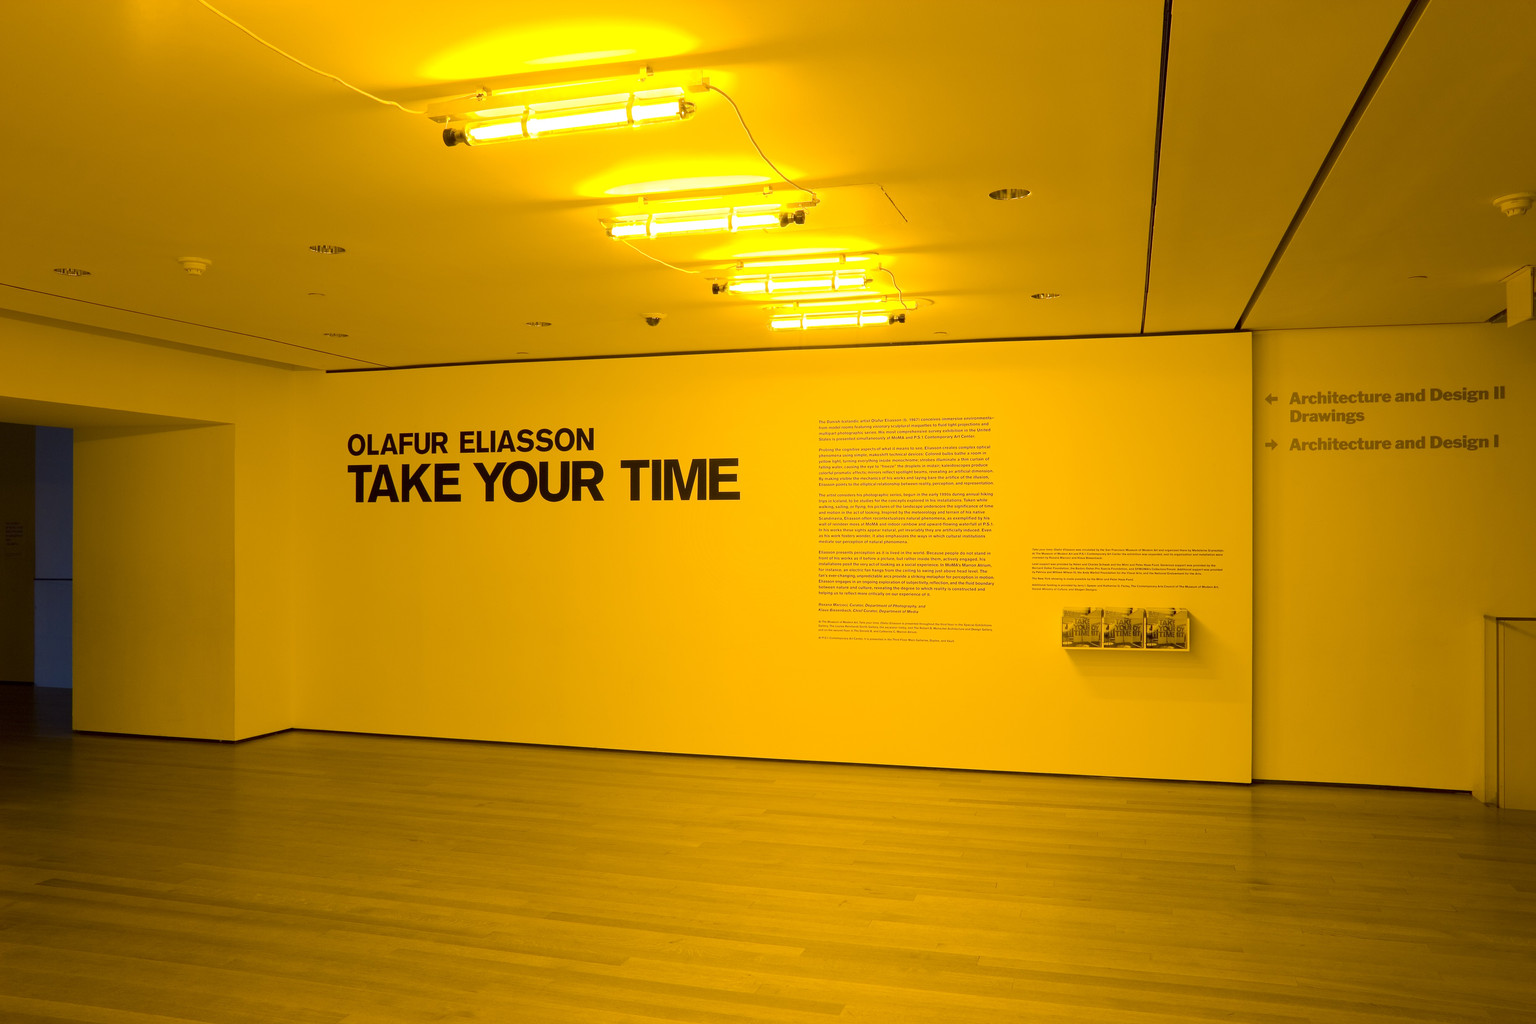 Take your Olafur Eliasson MoMA